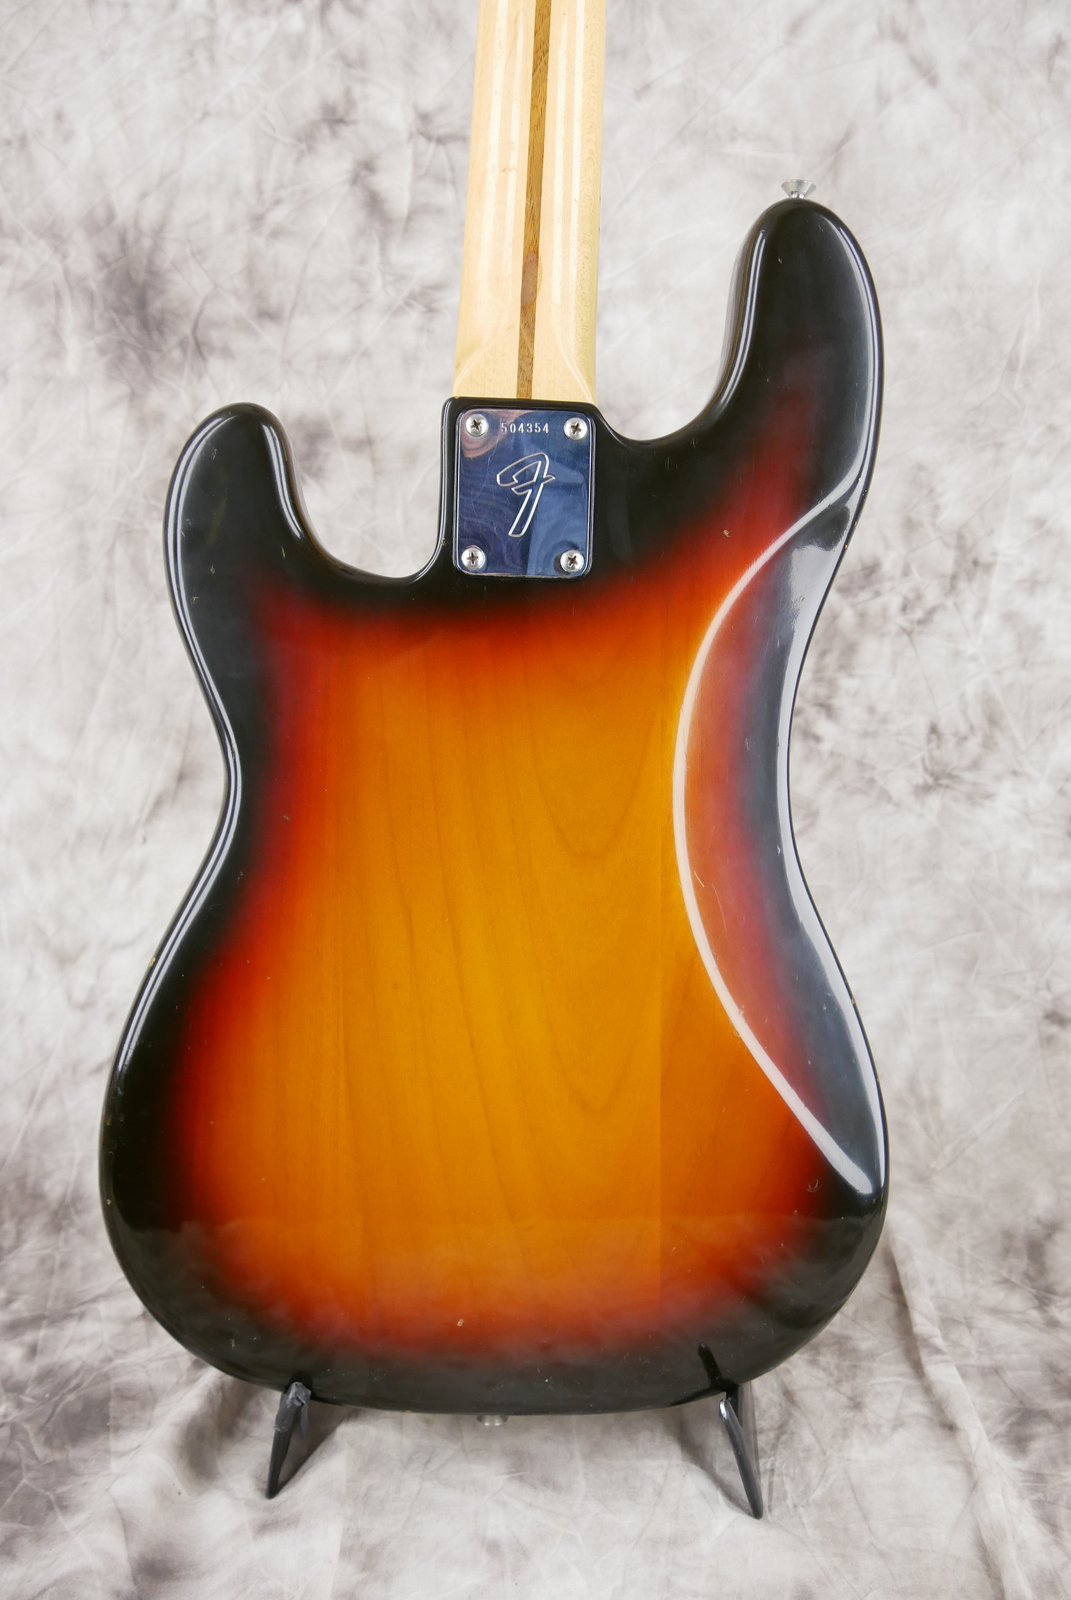 Fender-Precision-Bass-1974-sunburst-004.JPG